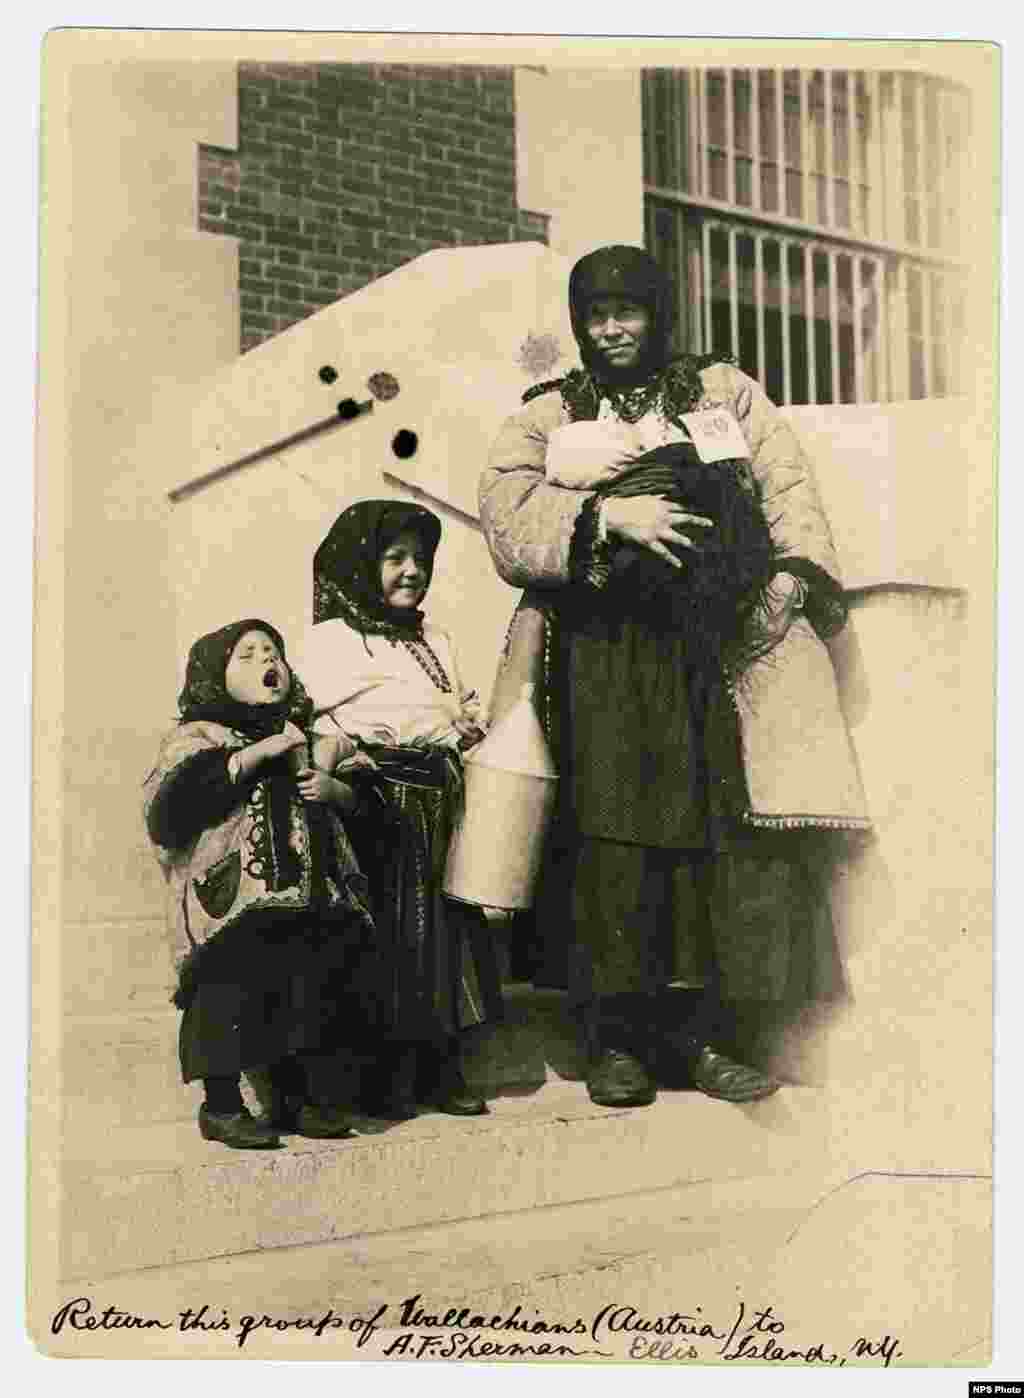 Femei valahe cu copiii lor. Vallahia sau Valahia era o regiune istorică a României situată la nord de Dunăre și la sud de Carpații de sud. Nota scrisă de mână pomenește Austria, pentru că unele din aceste zone au făcut parte din Imperiul Austro-Ungar înainte de Primul Război Mondial.